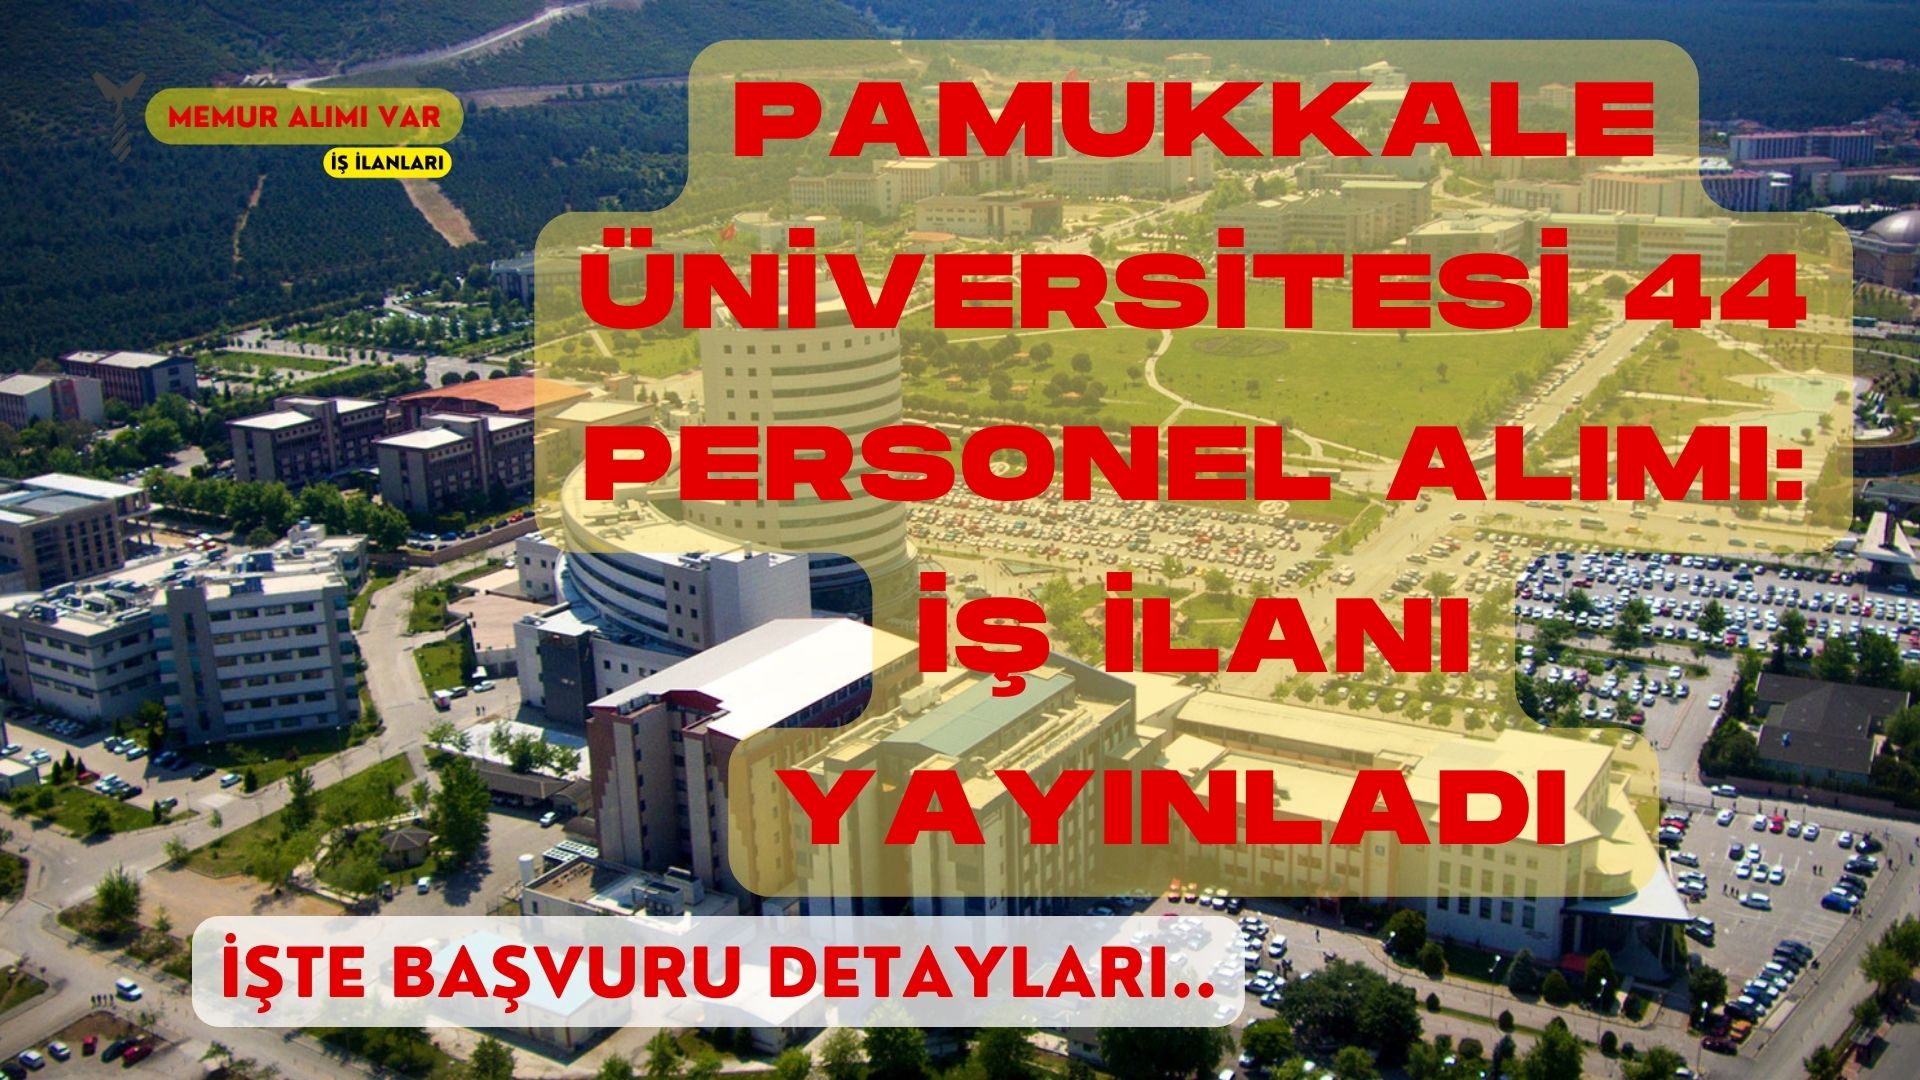 Pamukkale Üniversitesi 44 Personel Alımı: İş İlanı Yayınladı İşte Başvuru Şartları